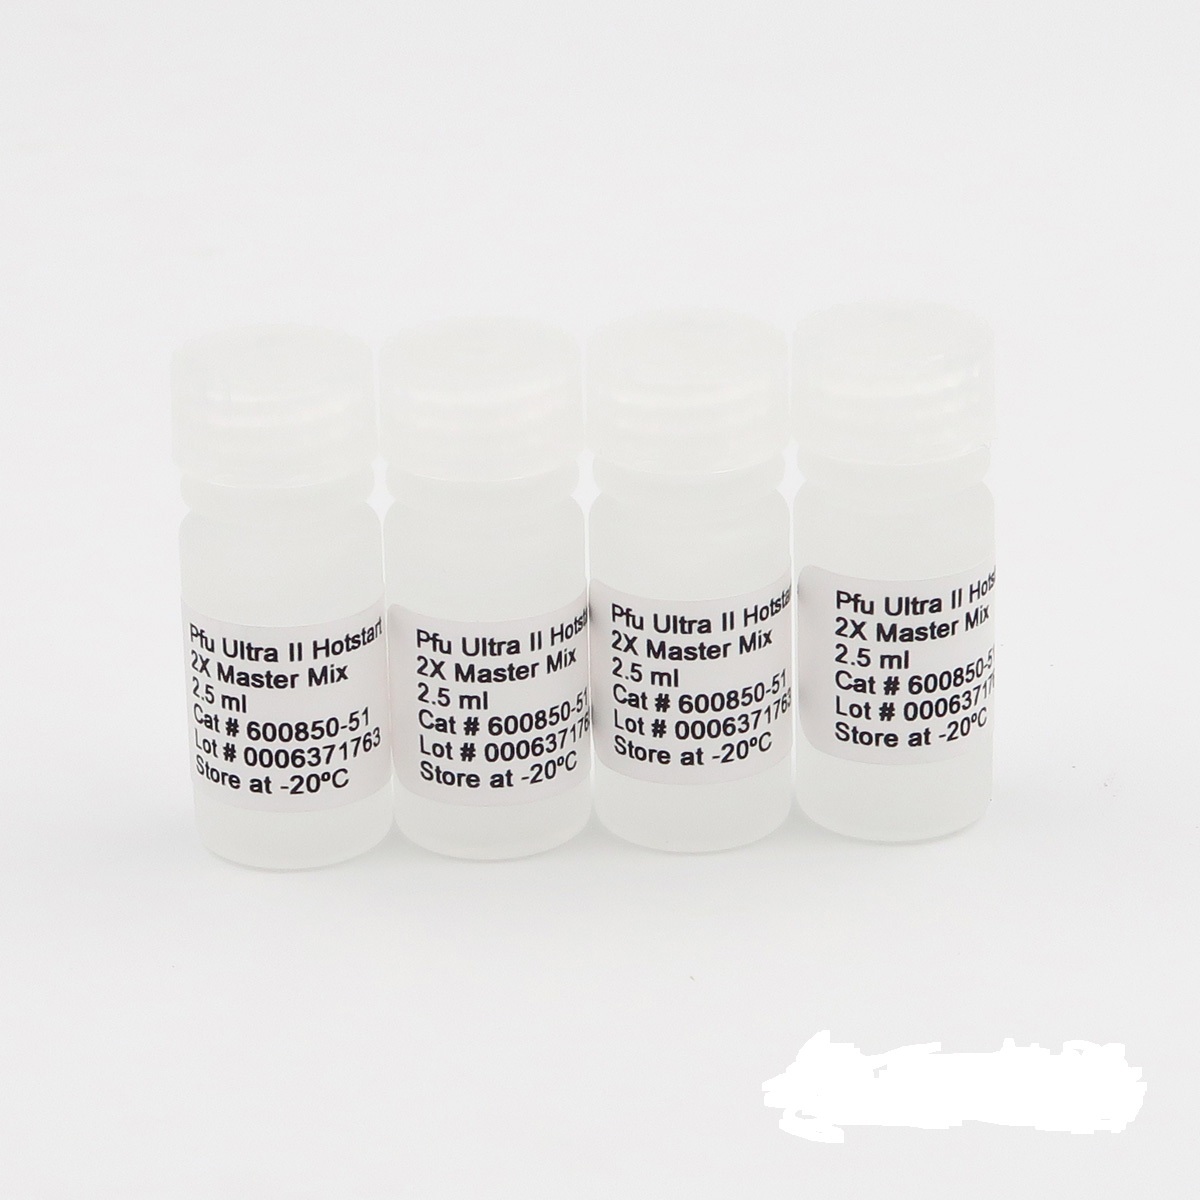 发热伴血小板减少综合征布尼亚病毒染料法荧光定量RT-PCR试剂盒